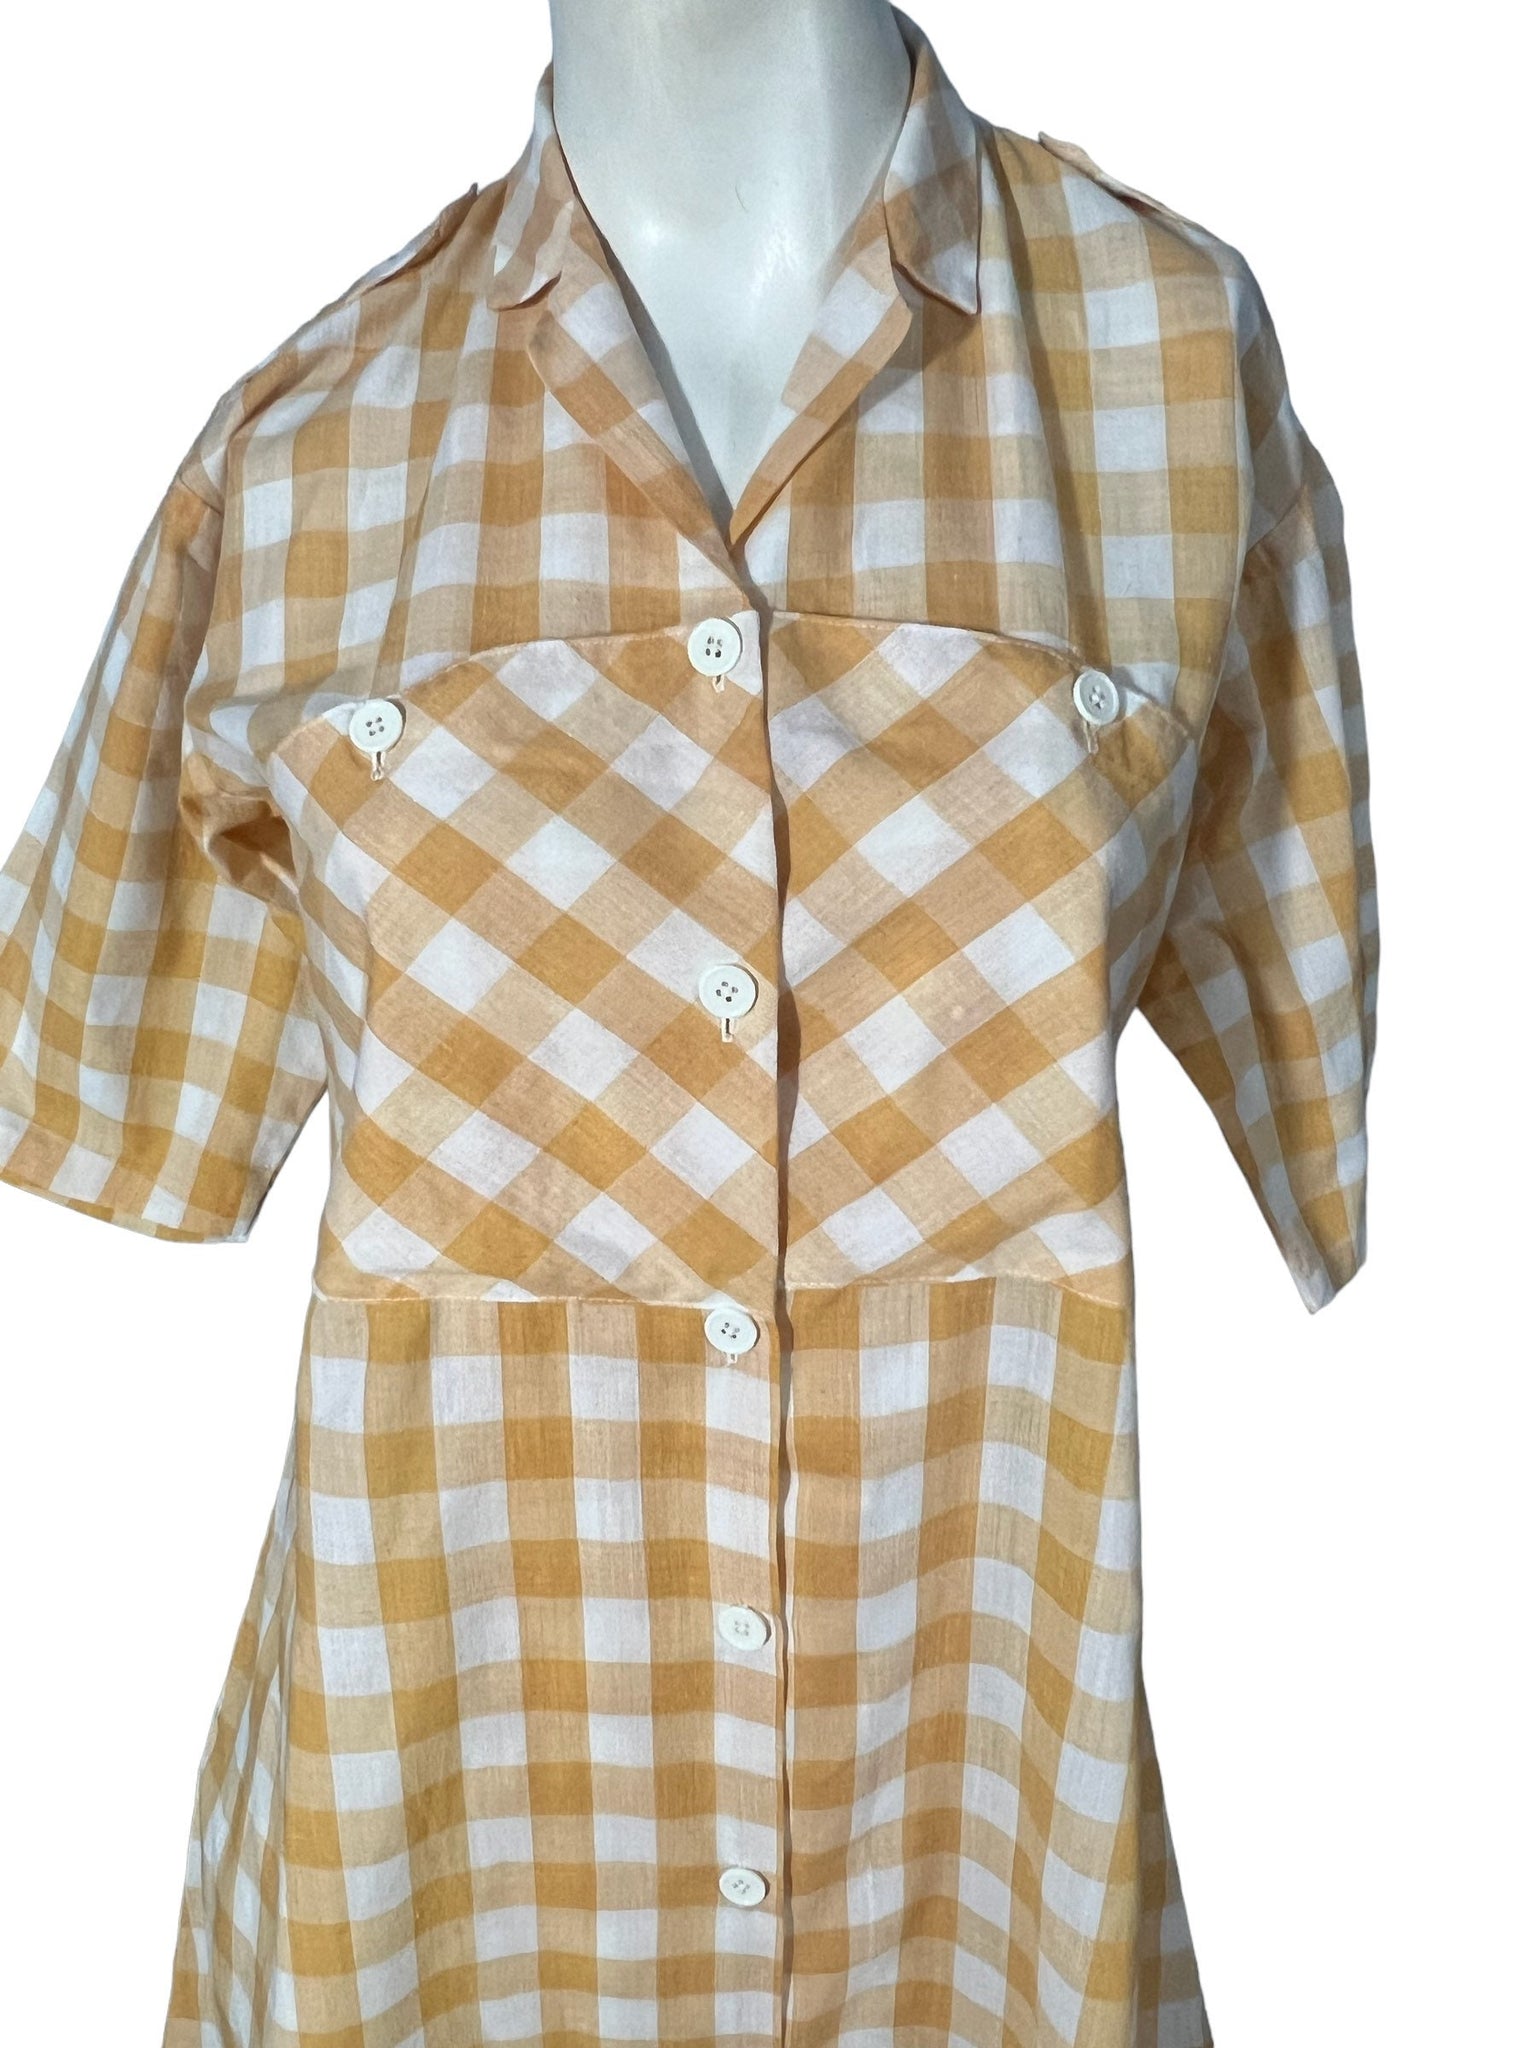 Vintage 80's cotton check shirt dress L